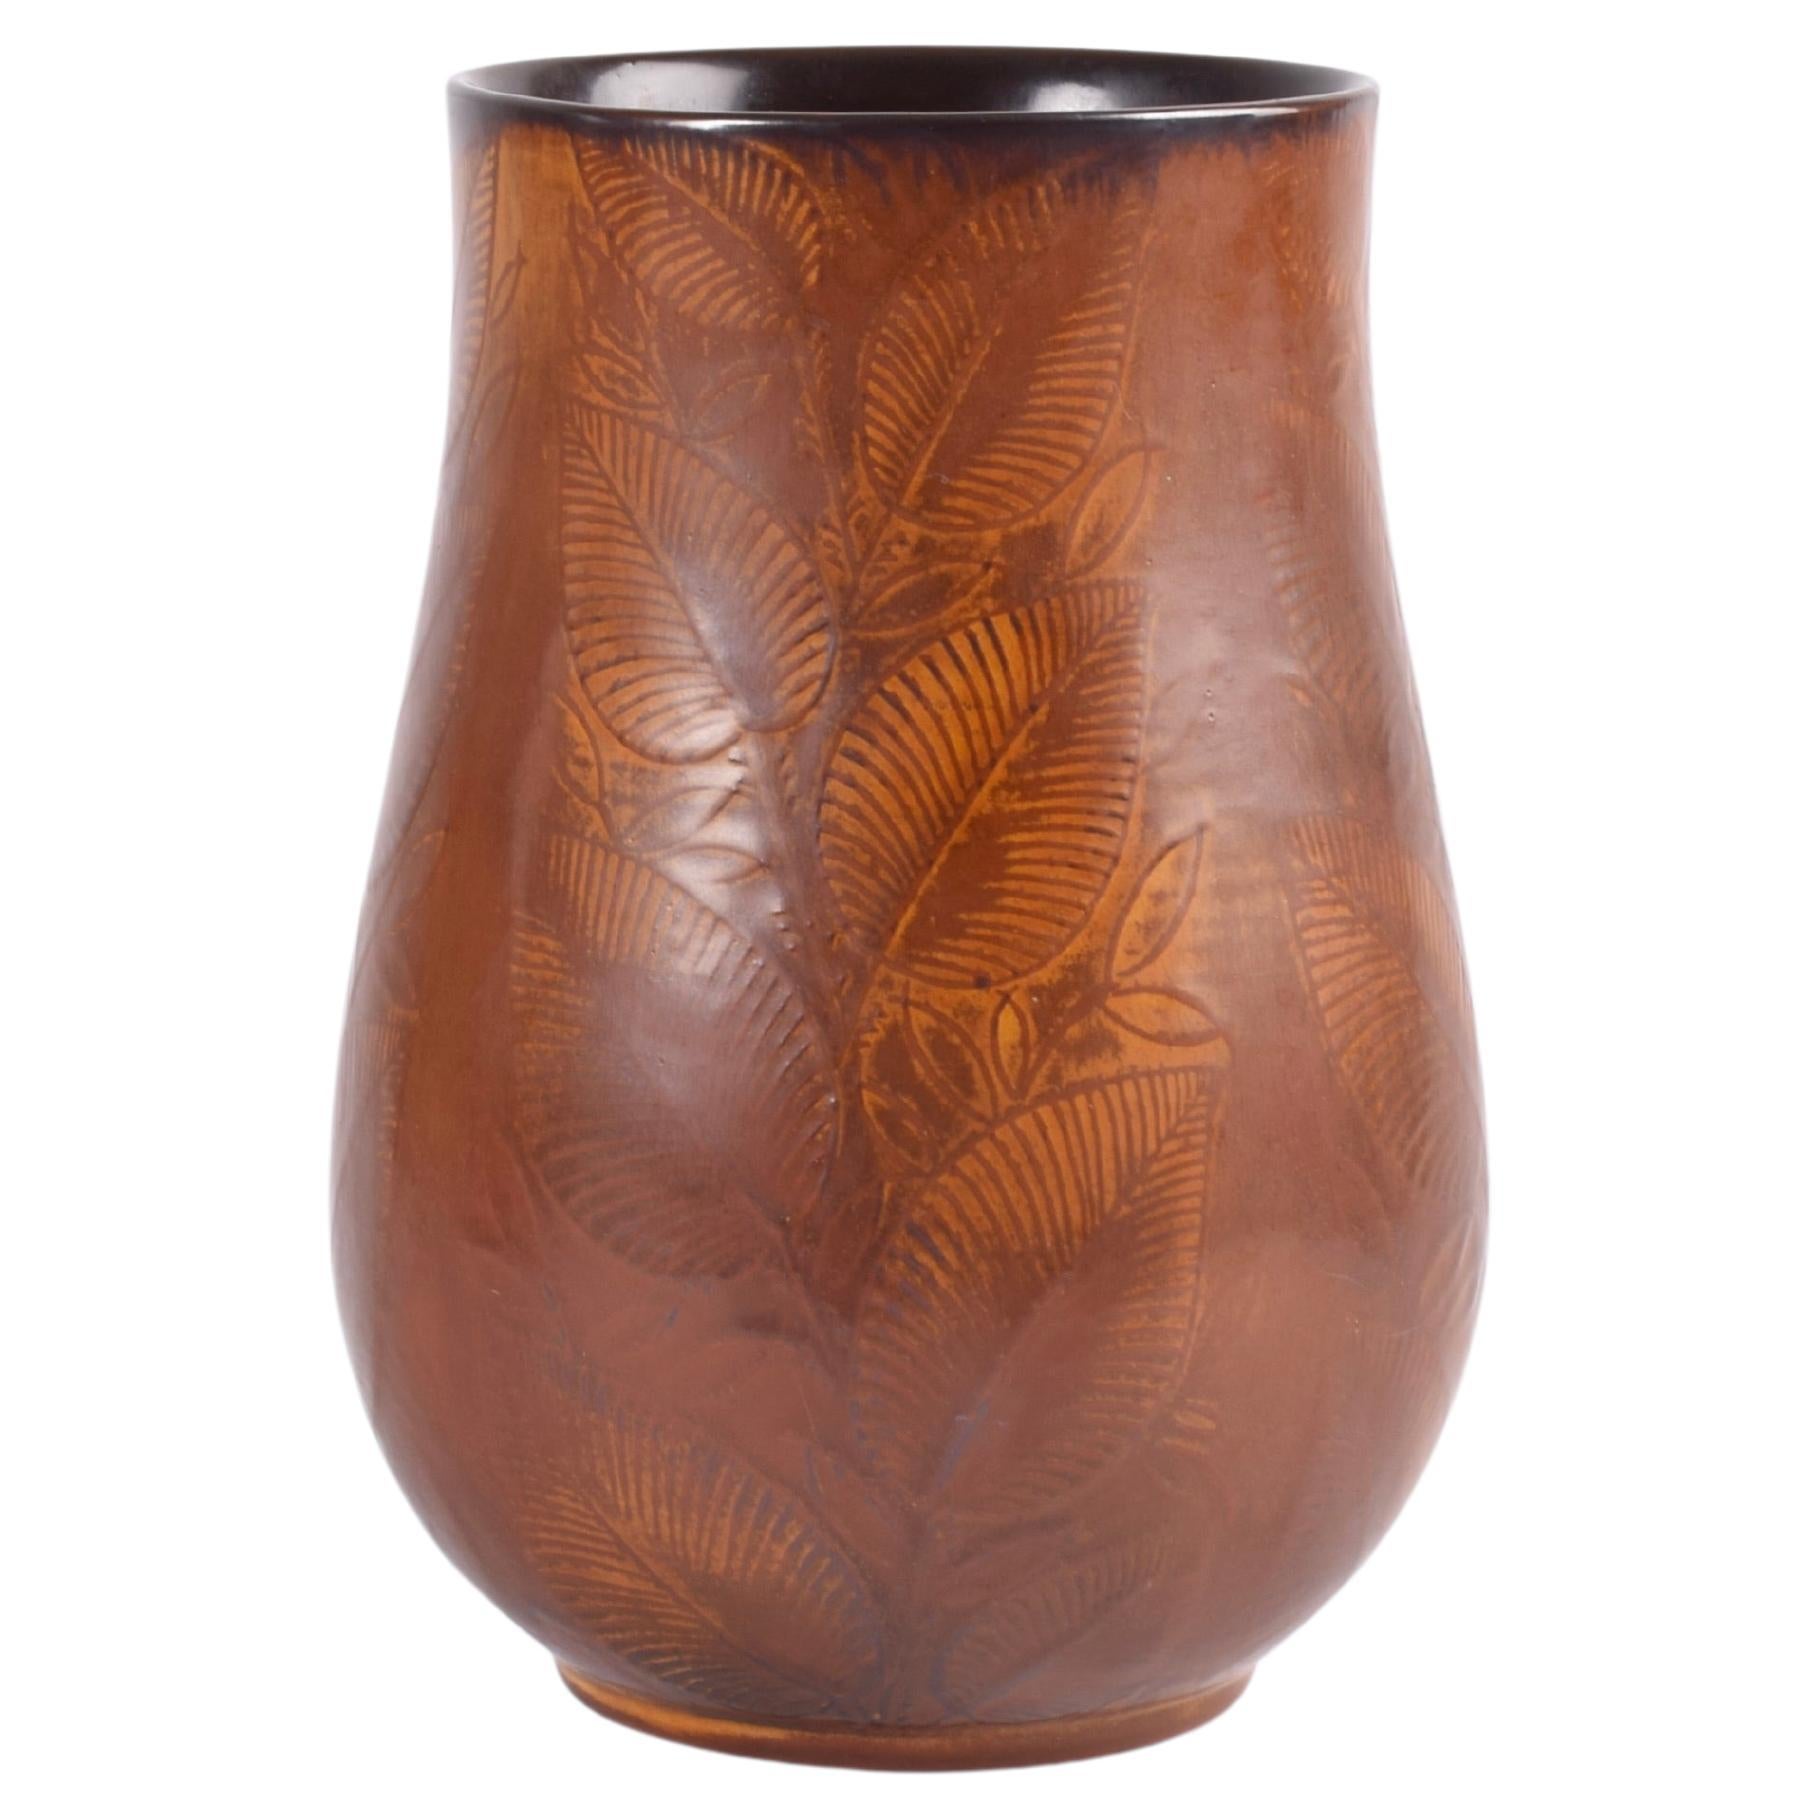 Rare Nils Thorsson for Royal Copenhagen "Løvspring" Vase, Danish Ceramic, 1940s For Sale